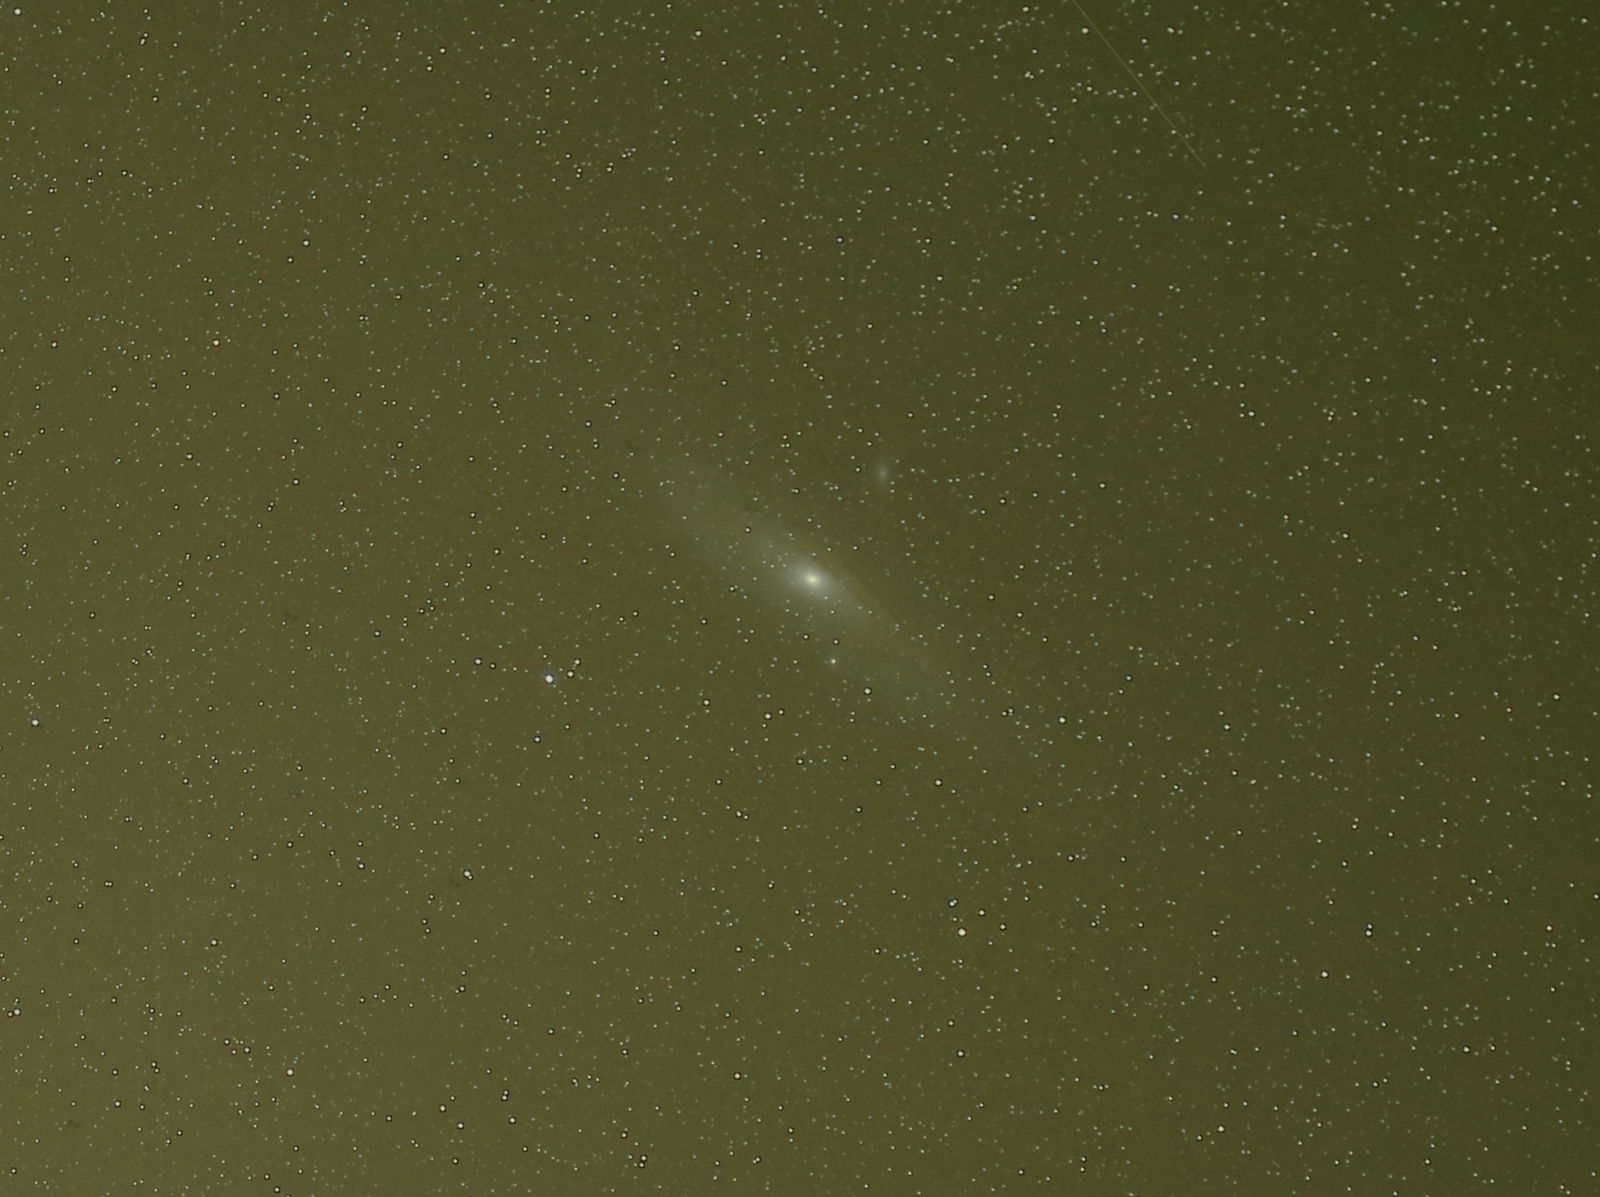 M31_crop.jpg